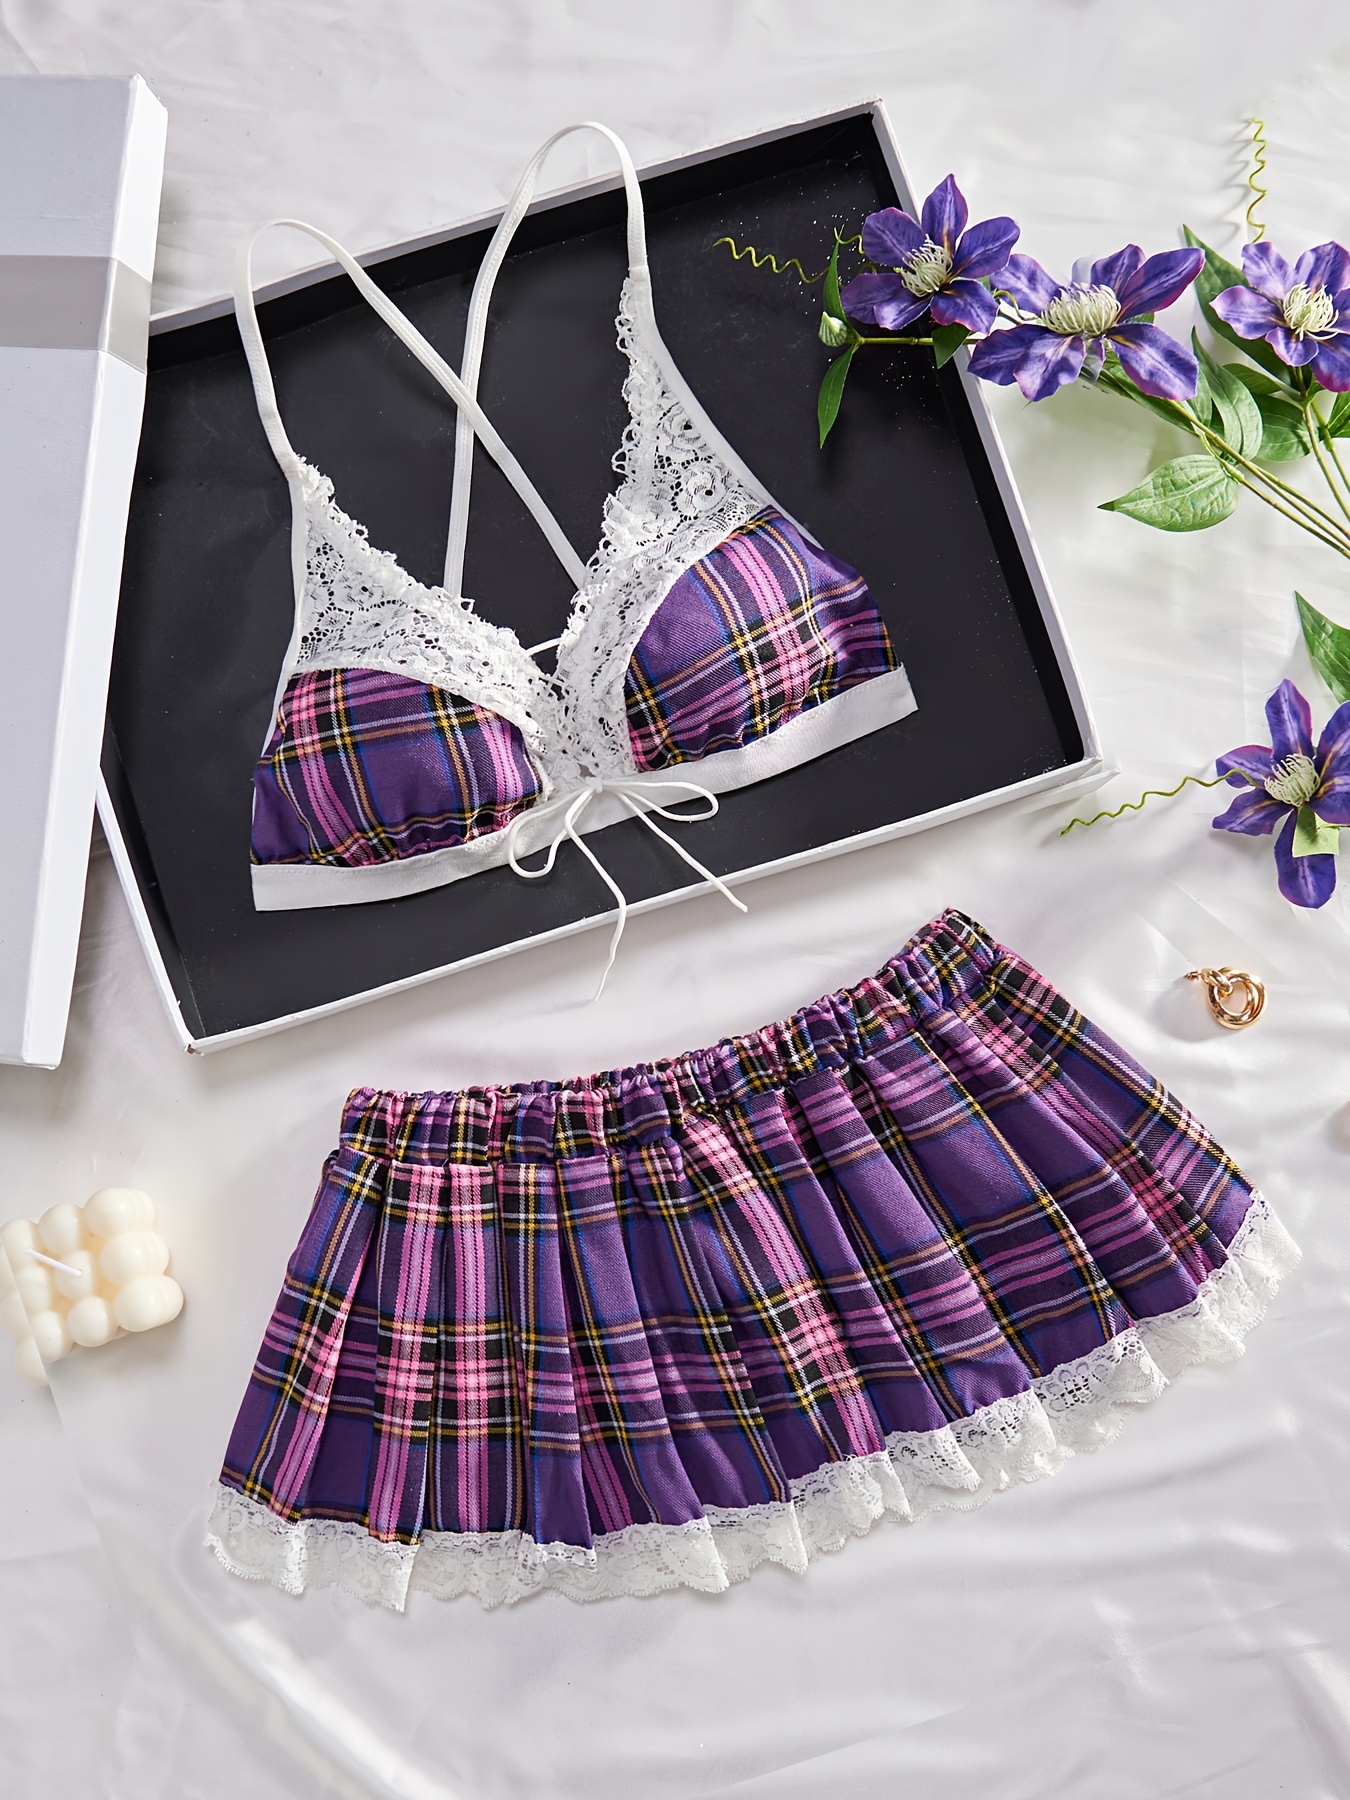 Lace Mesh Bra & Skirt, Bow Tie Push Up Bra & Sheer Mini Skirt Lingerie Set,  Women's Lingerie & Underwear